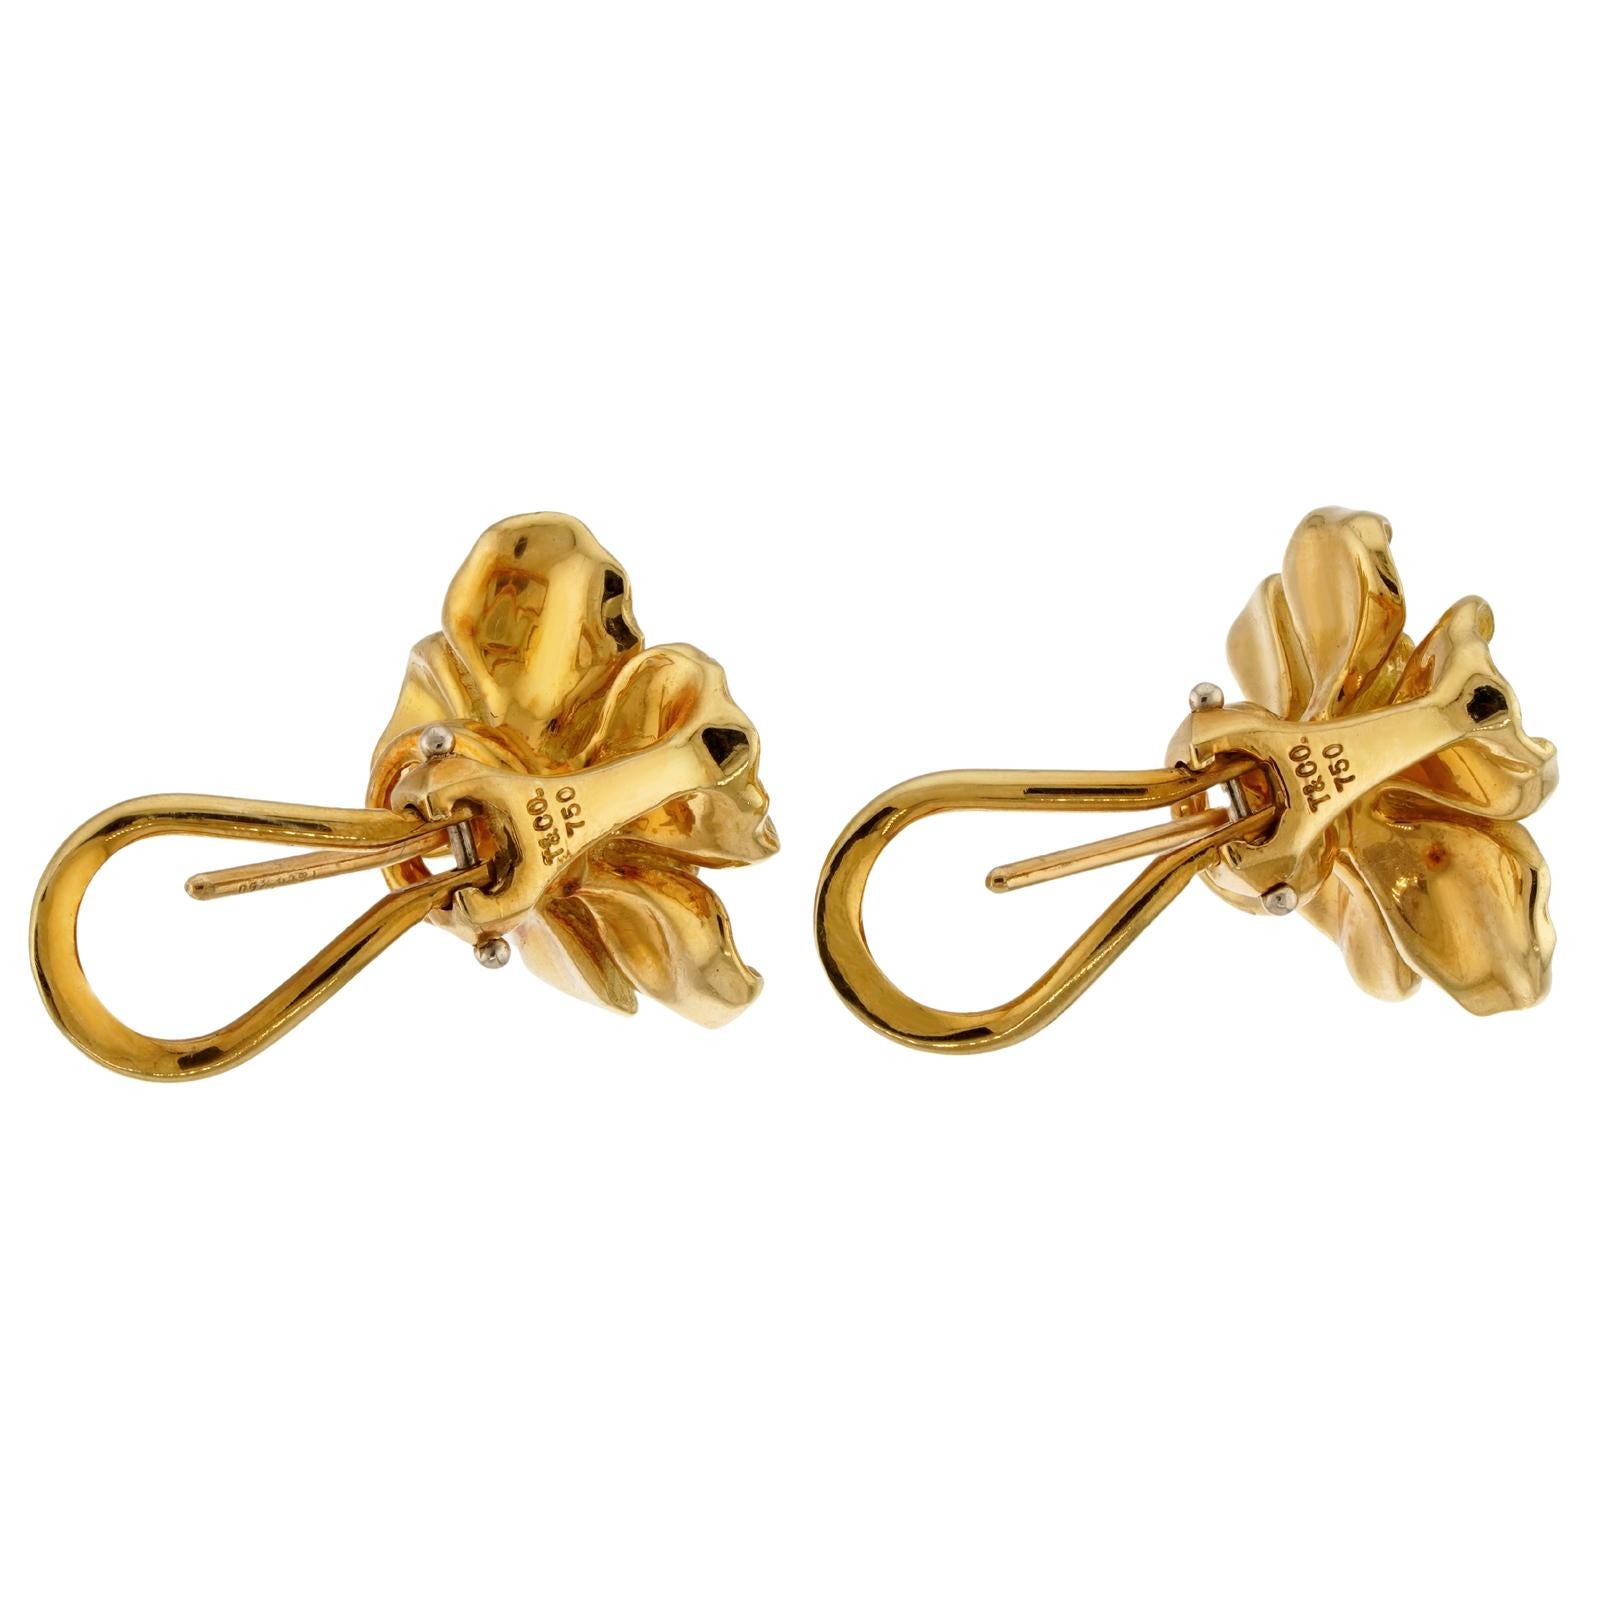 Ces magnifiques boucles d'oreilles Tiffany à clip de l'élégante collection florale Dogwood présentent un motif de fleur de rose sauvage en or jaune 18 carats. Fabriqué aux États-Unis vers les années 1980. Dimensions : 0,62